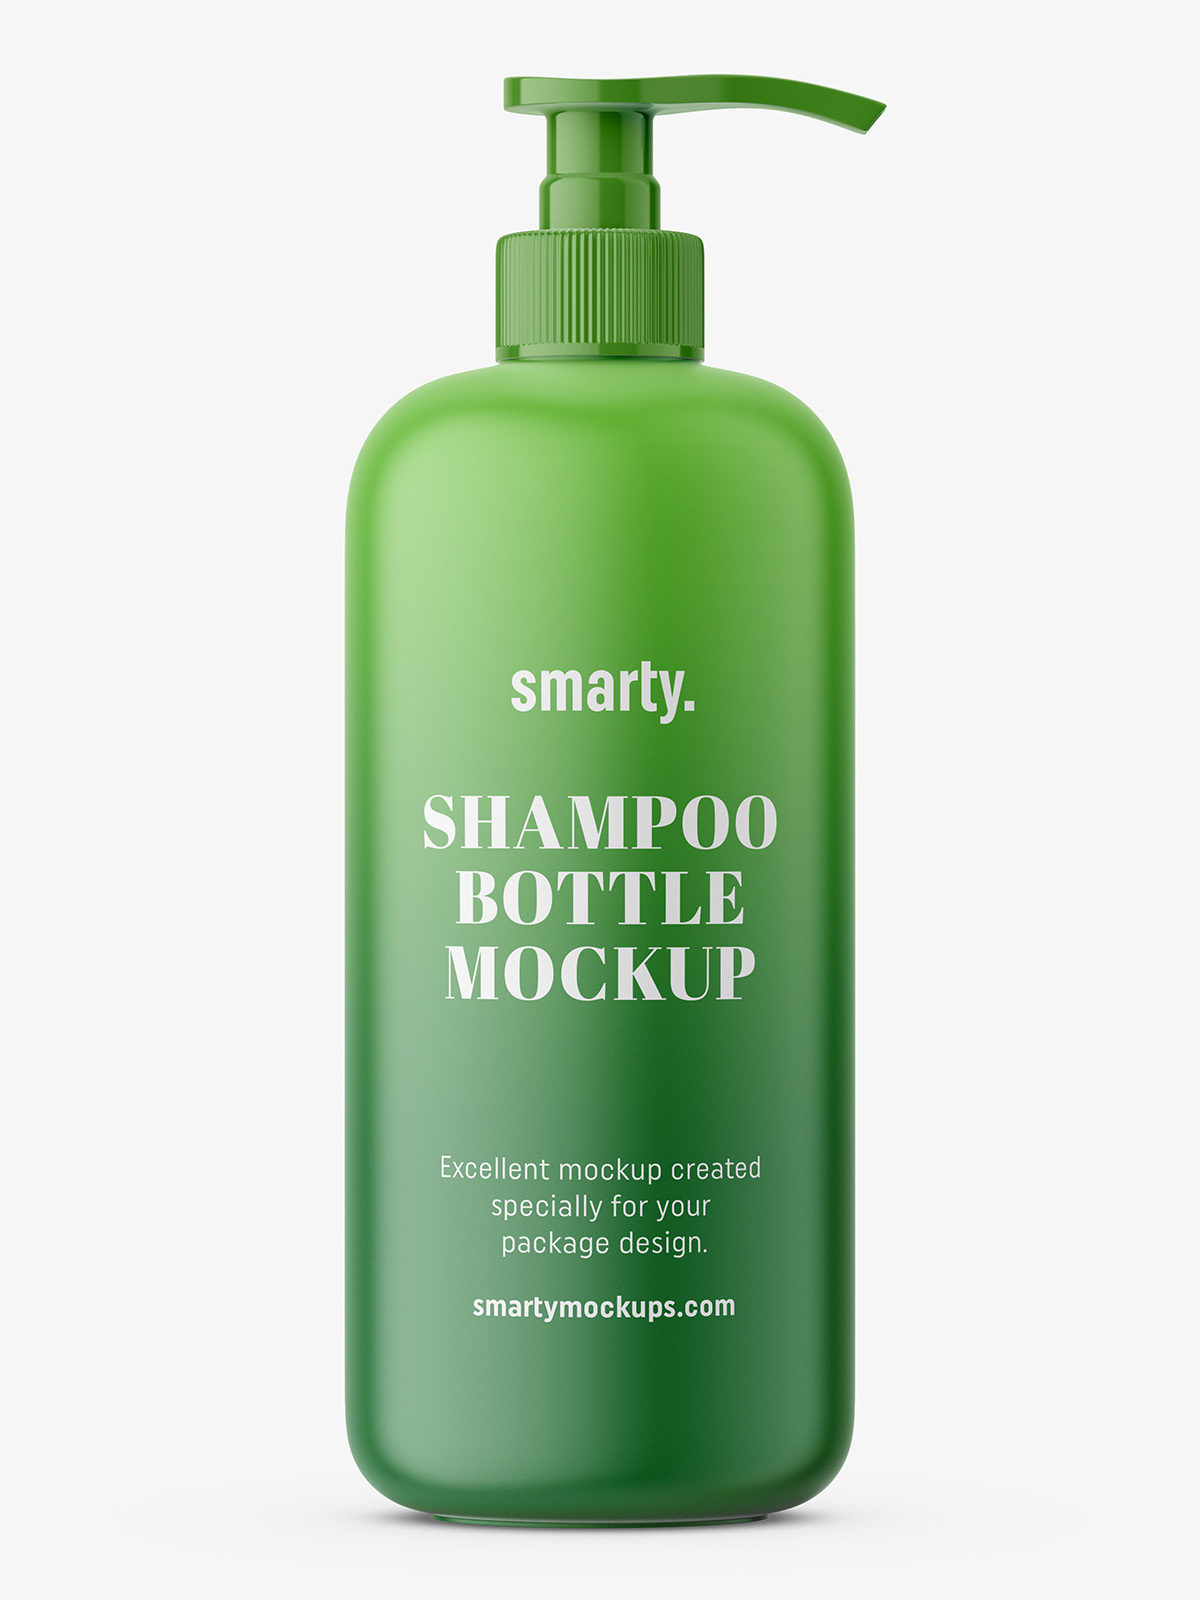 Shampoo Bottle - Homecare24